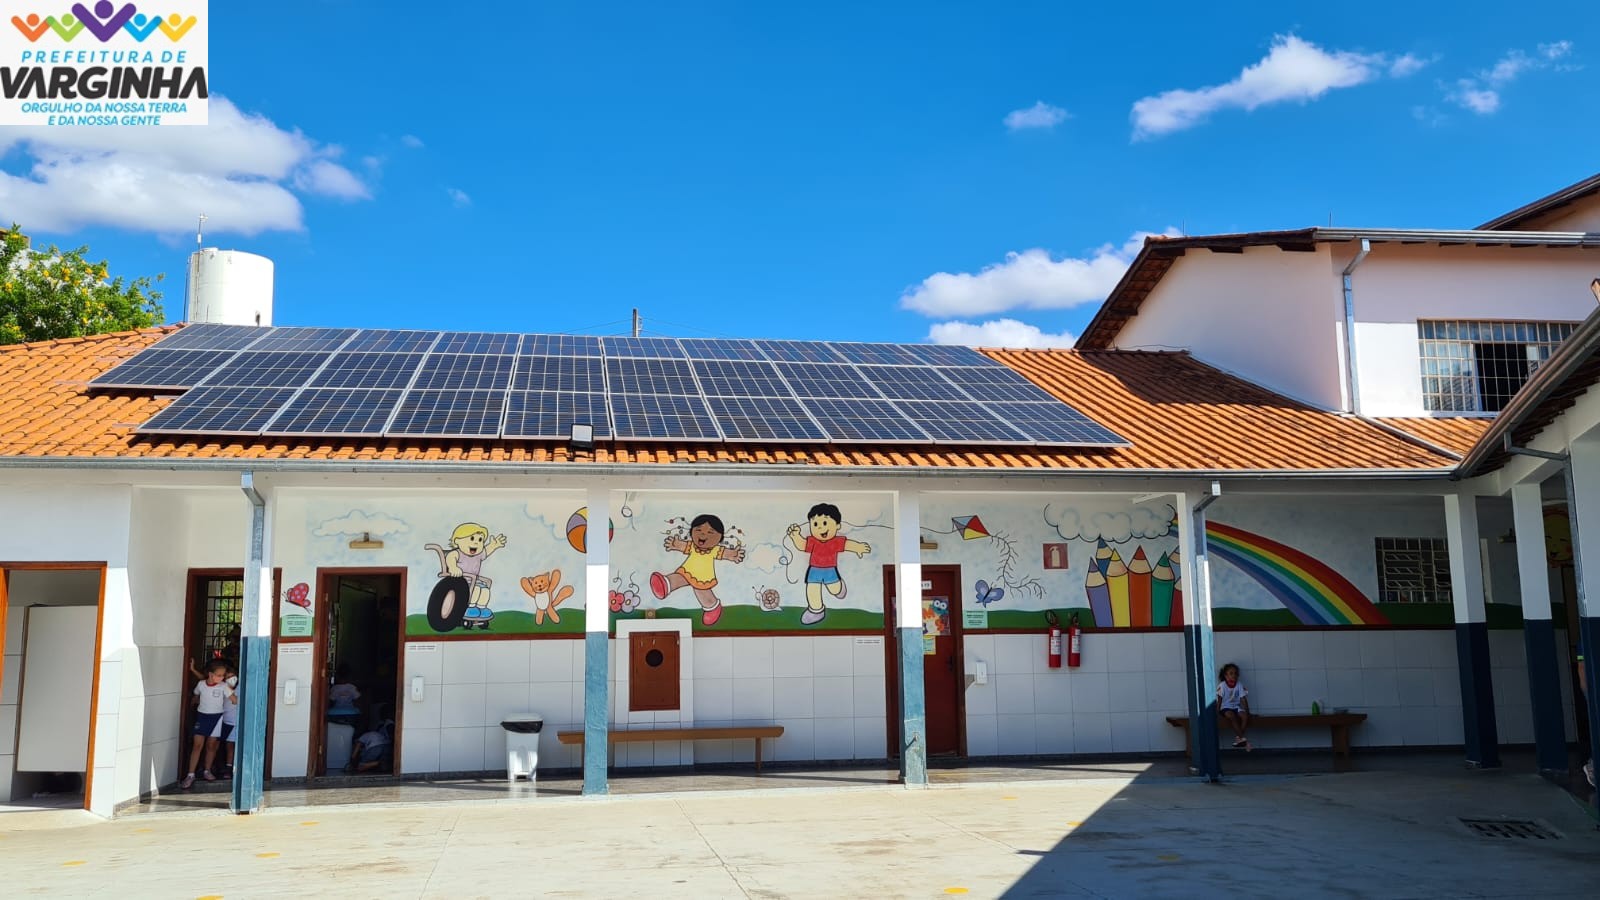 Prefeitura de Varginha investe em energia limpa para escolas municipais